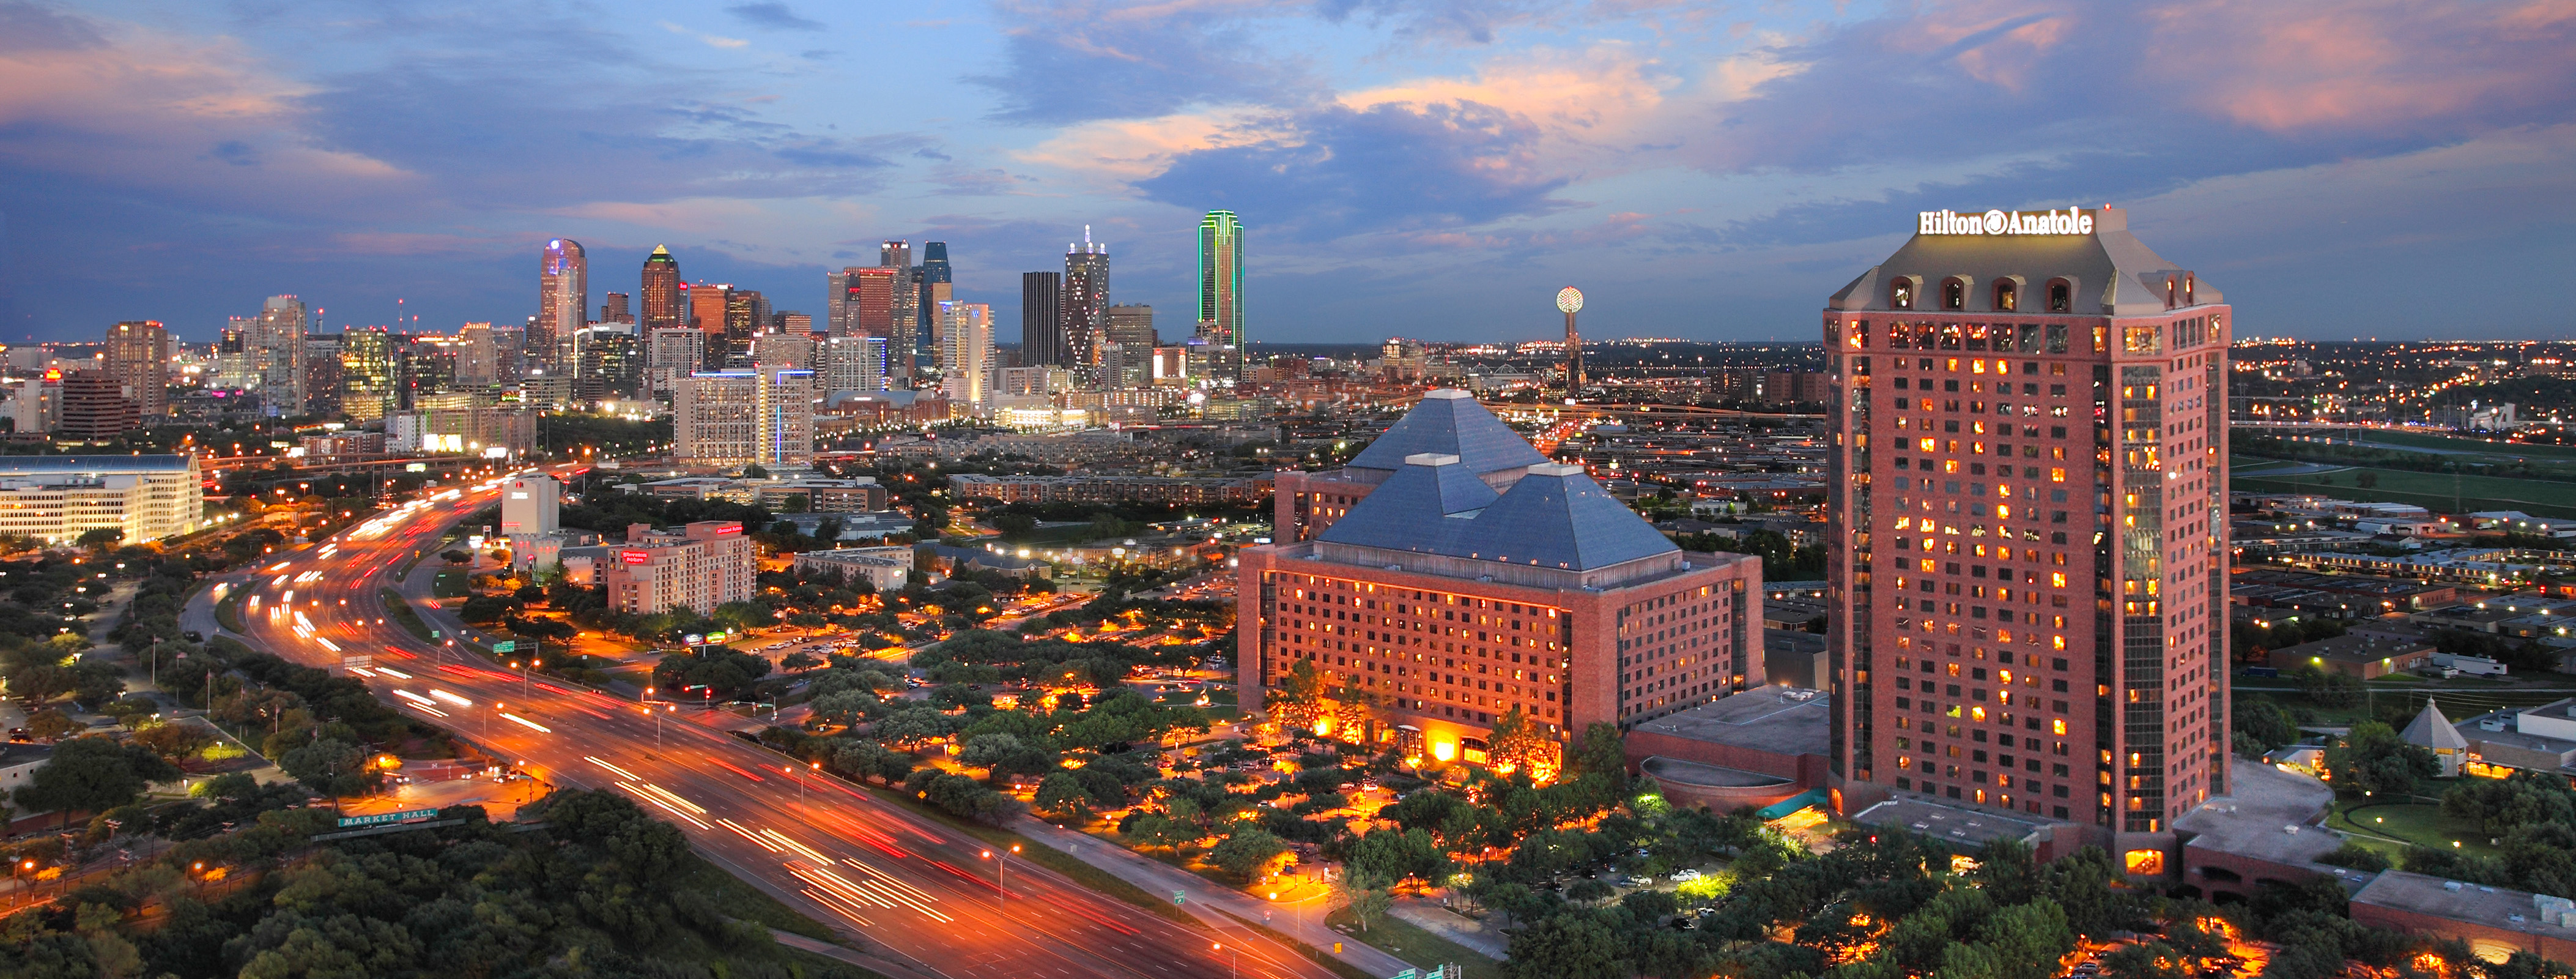 photo of the Hilton Anatole in the Dallas skyline